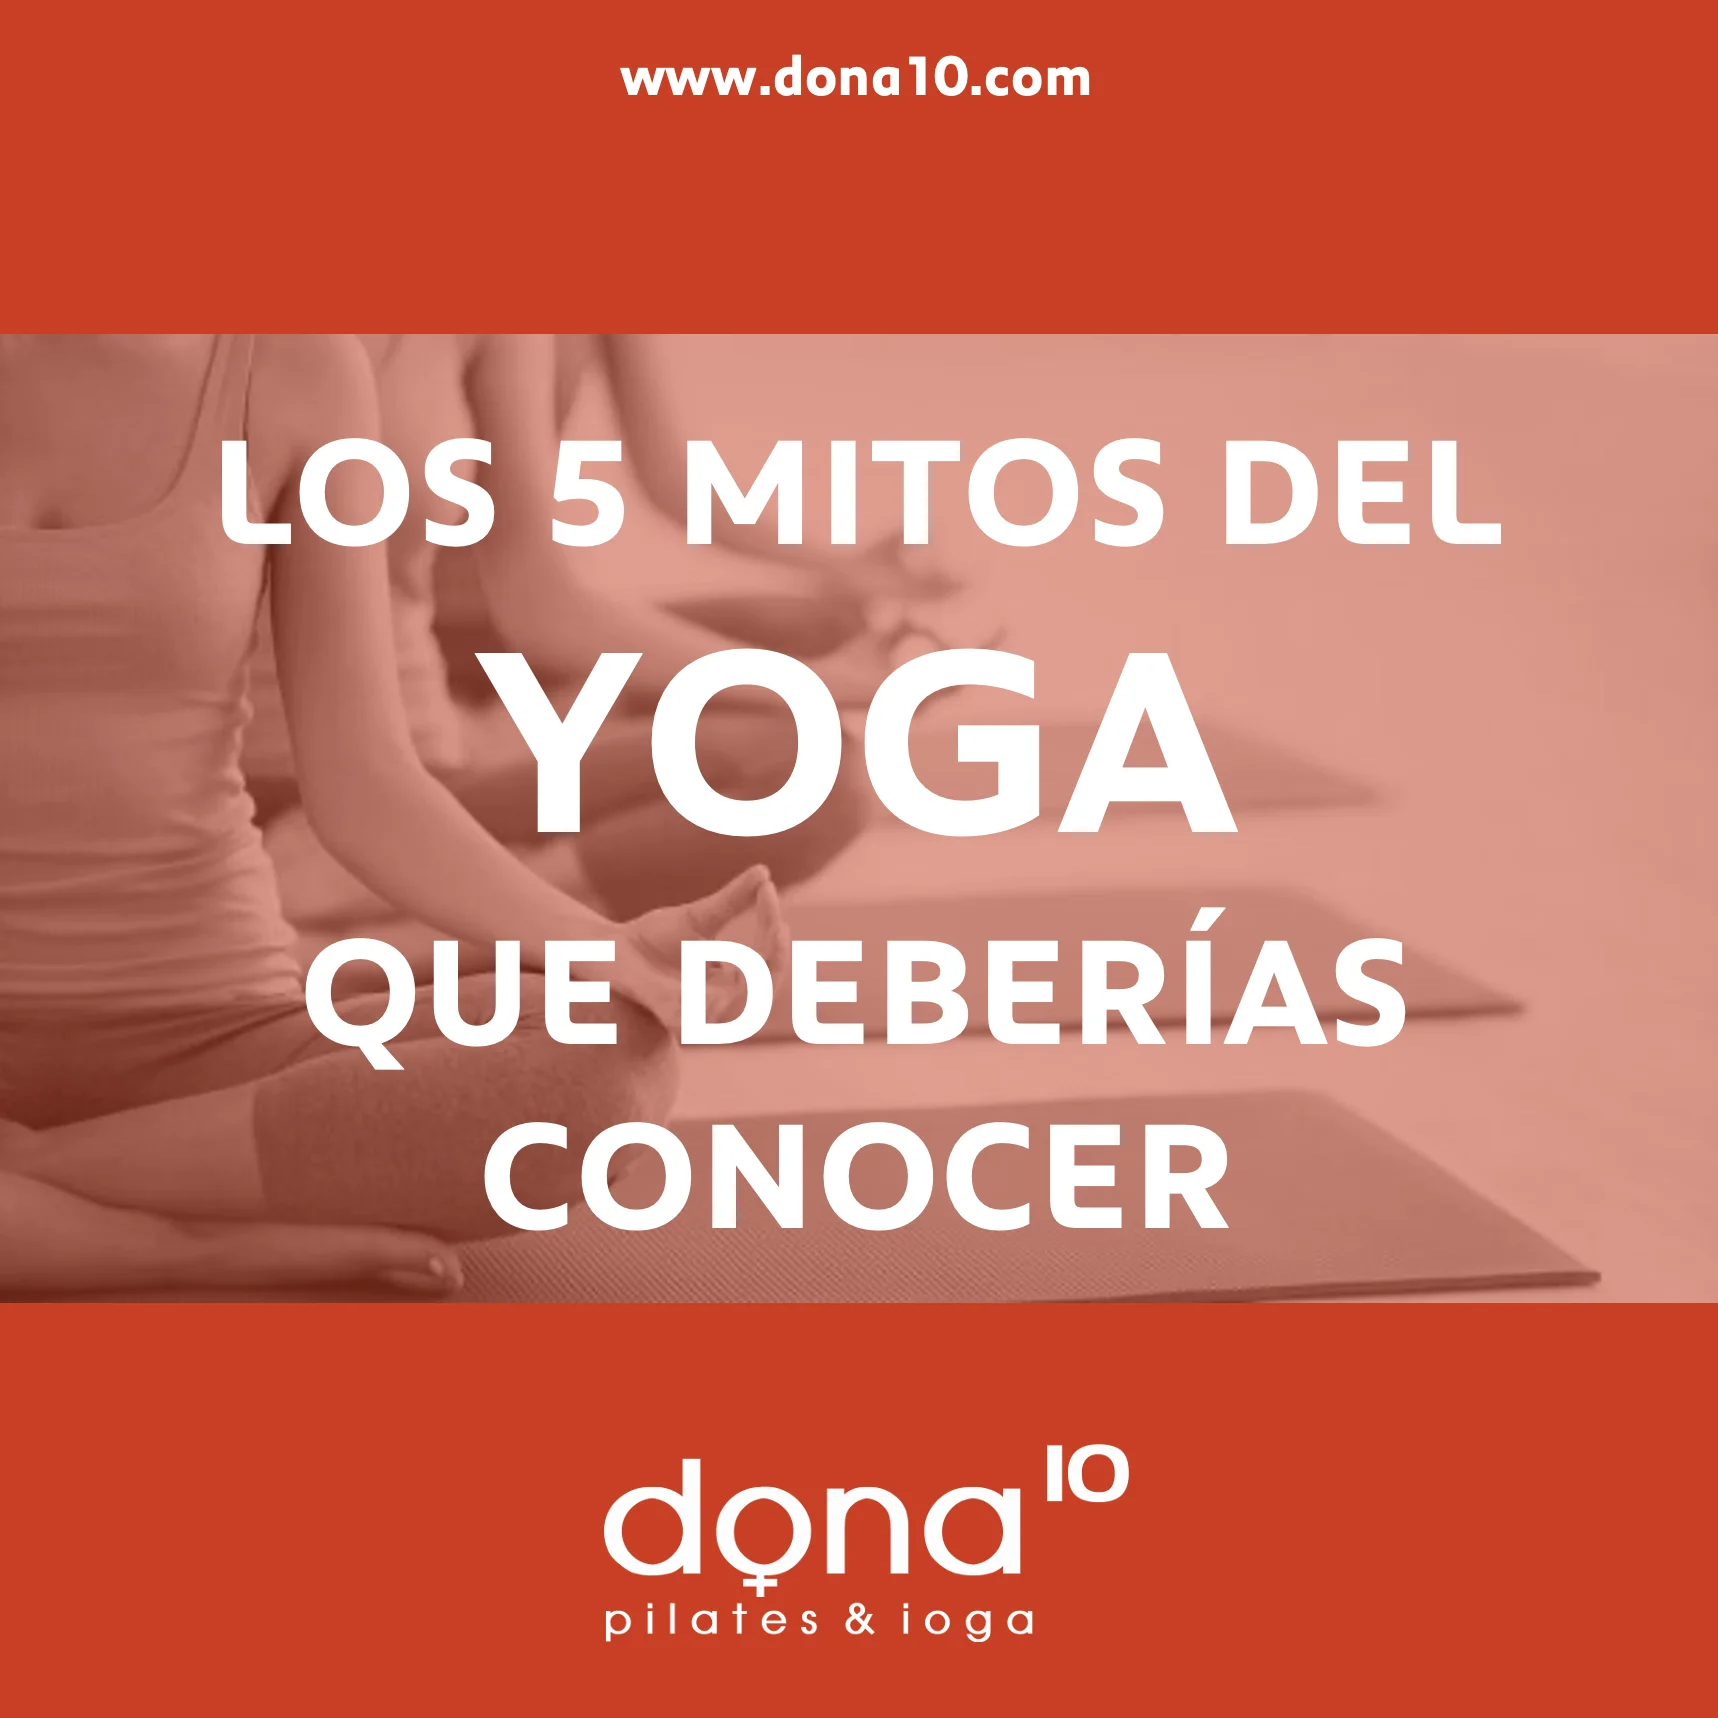 5 mitos del yoga blog dona10 pilates yoga brcelona